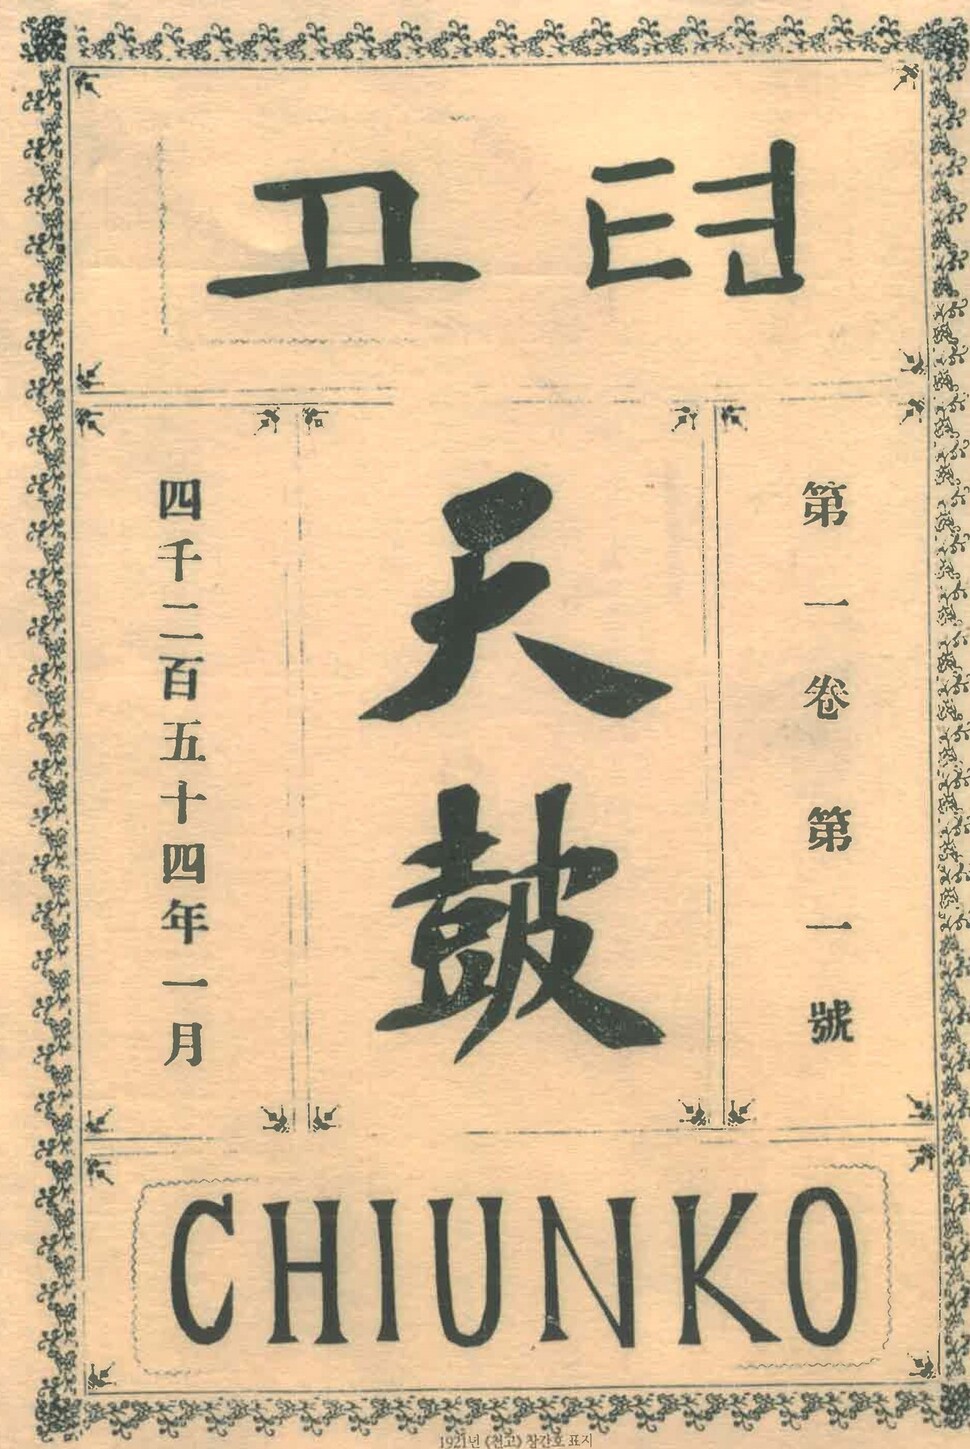 단재가 100년 전인 1921년 1월 발행한 &lt;천고&gt; 창간호.